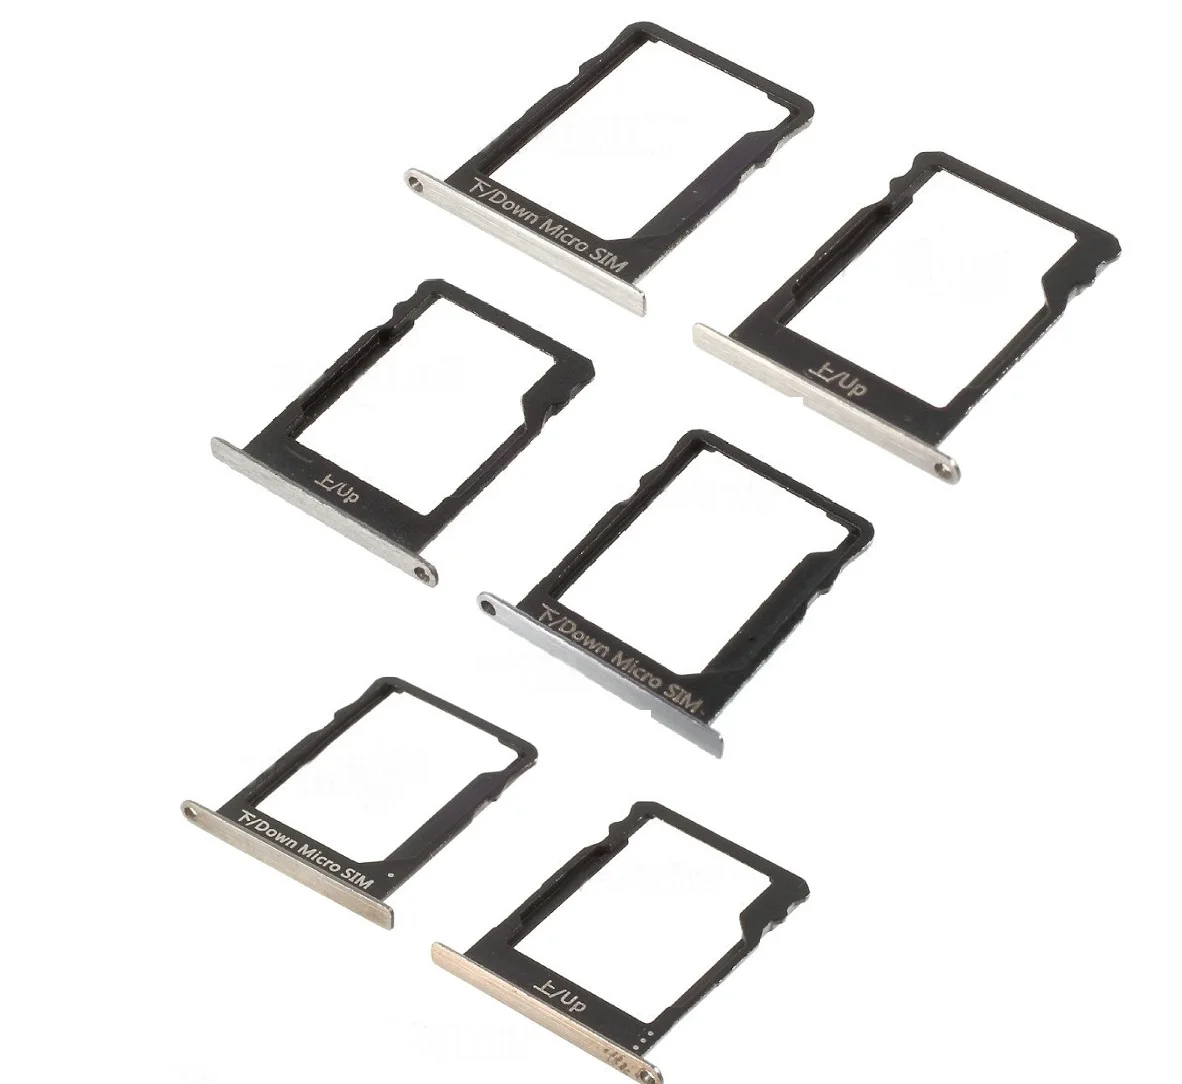 

2Pcs/set OEM for Huawei P8 Lite SIM1 + SIM2/Micro SD Card Slot Holders